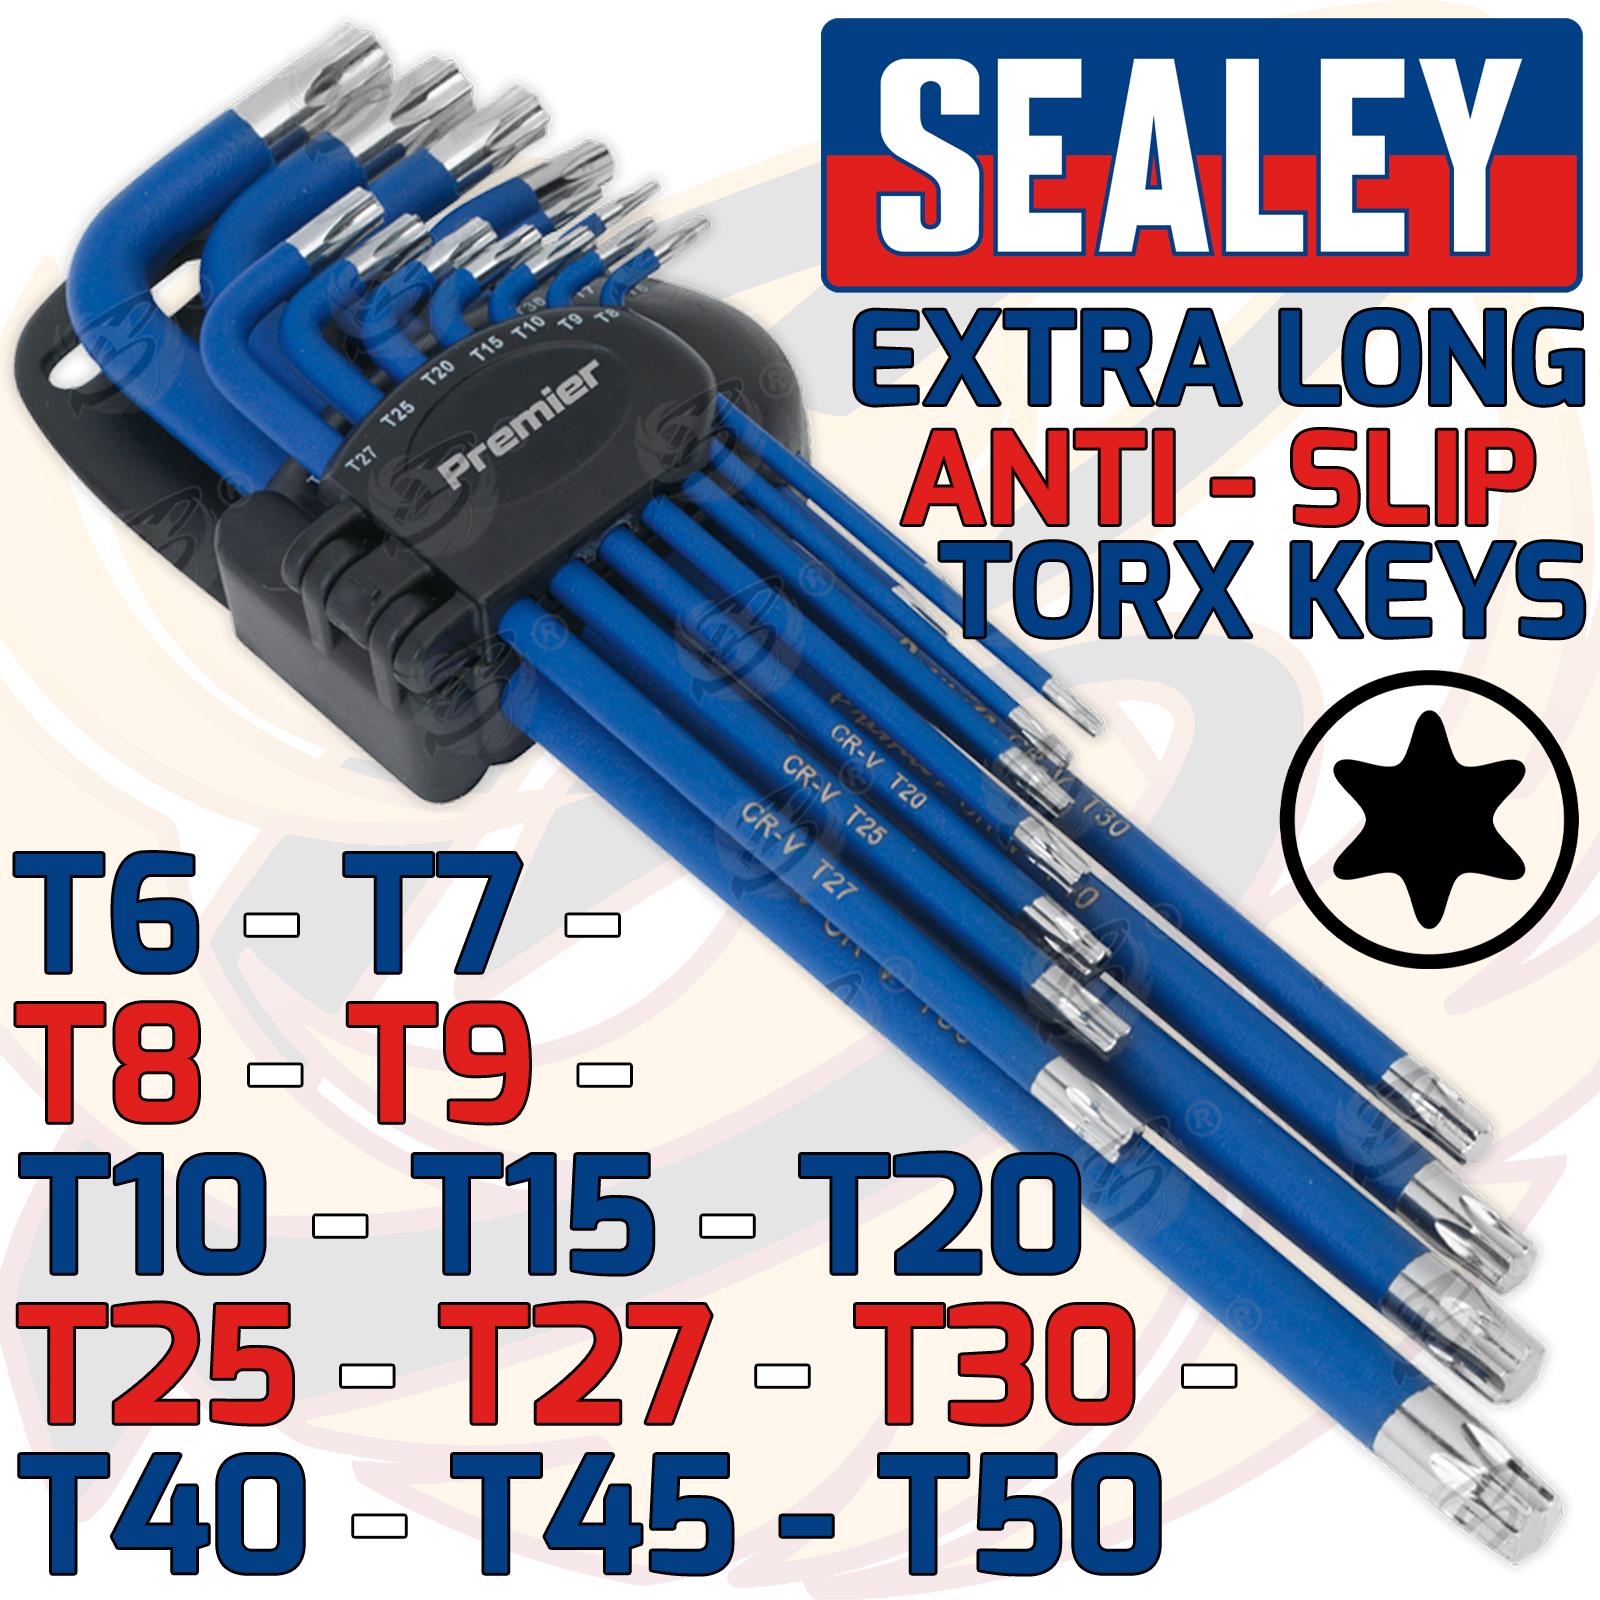 SEALEY 13PCS ANTI SLIP EXTRA LONG TORX KEY SET T6 - T50